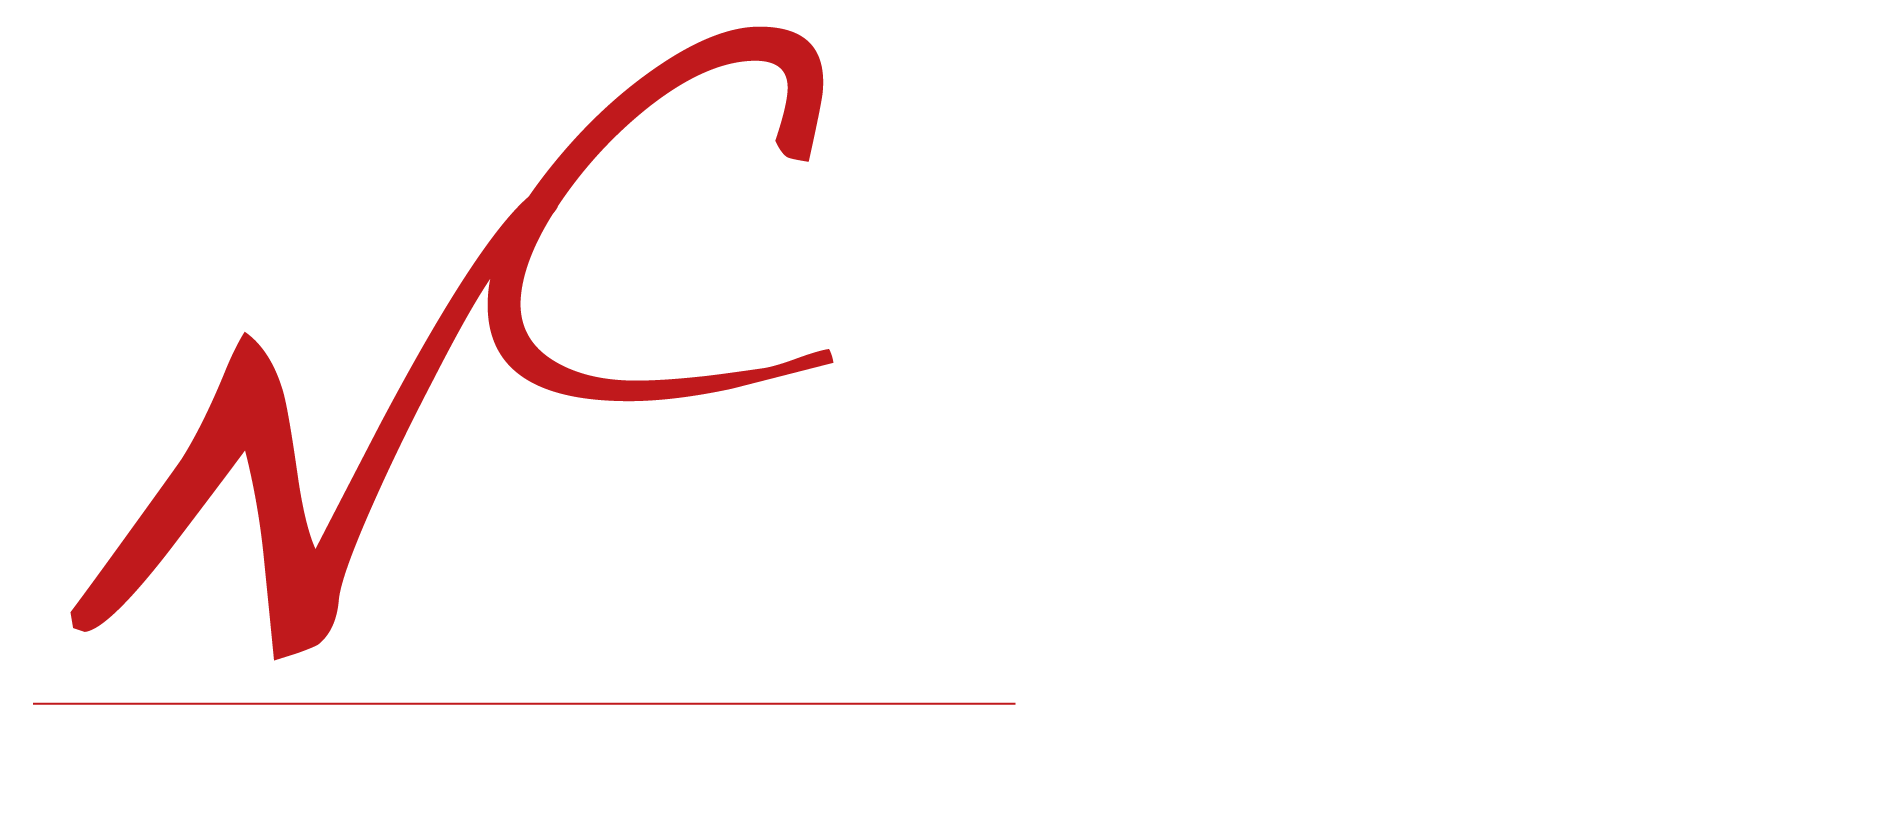 Camerata Nordica I Kalmar Läns Musikstiftelse